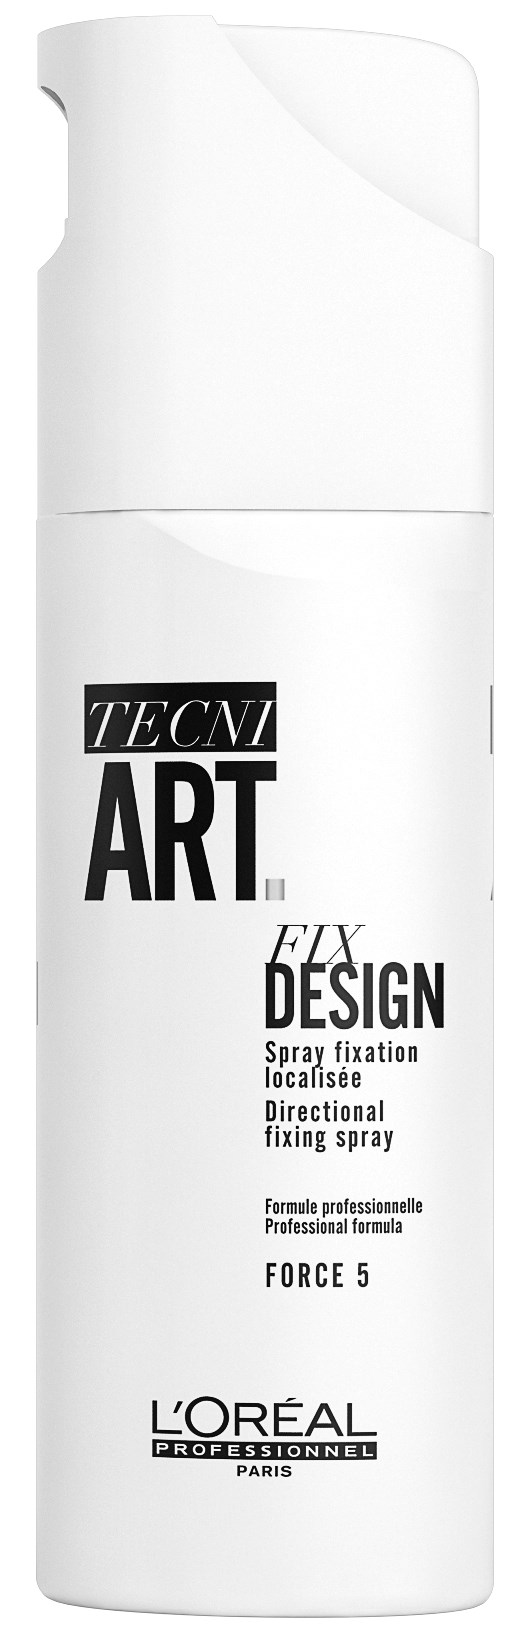 Tecni.ART Fix Fix Design